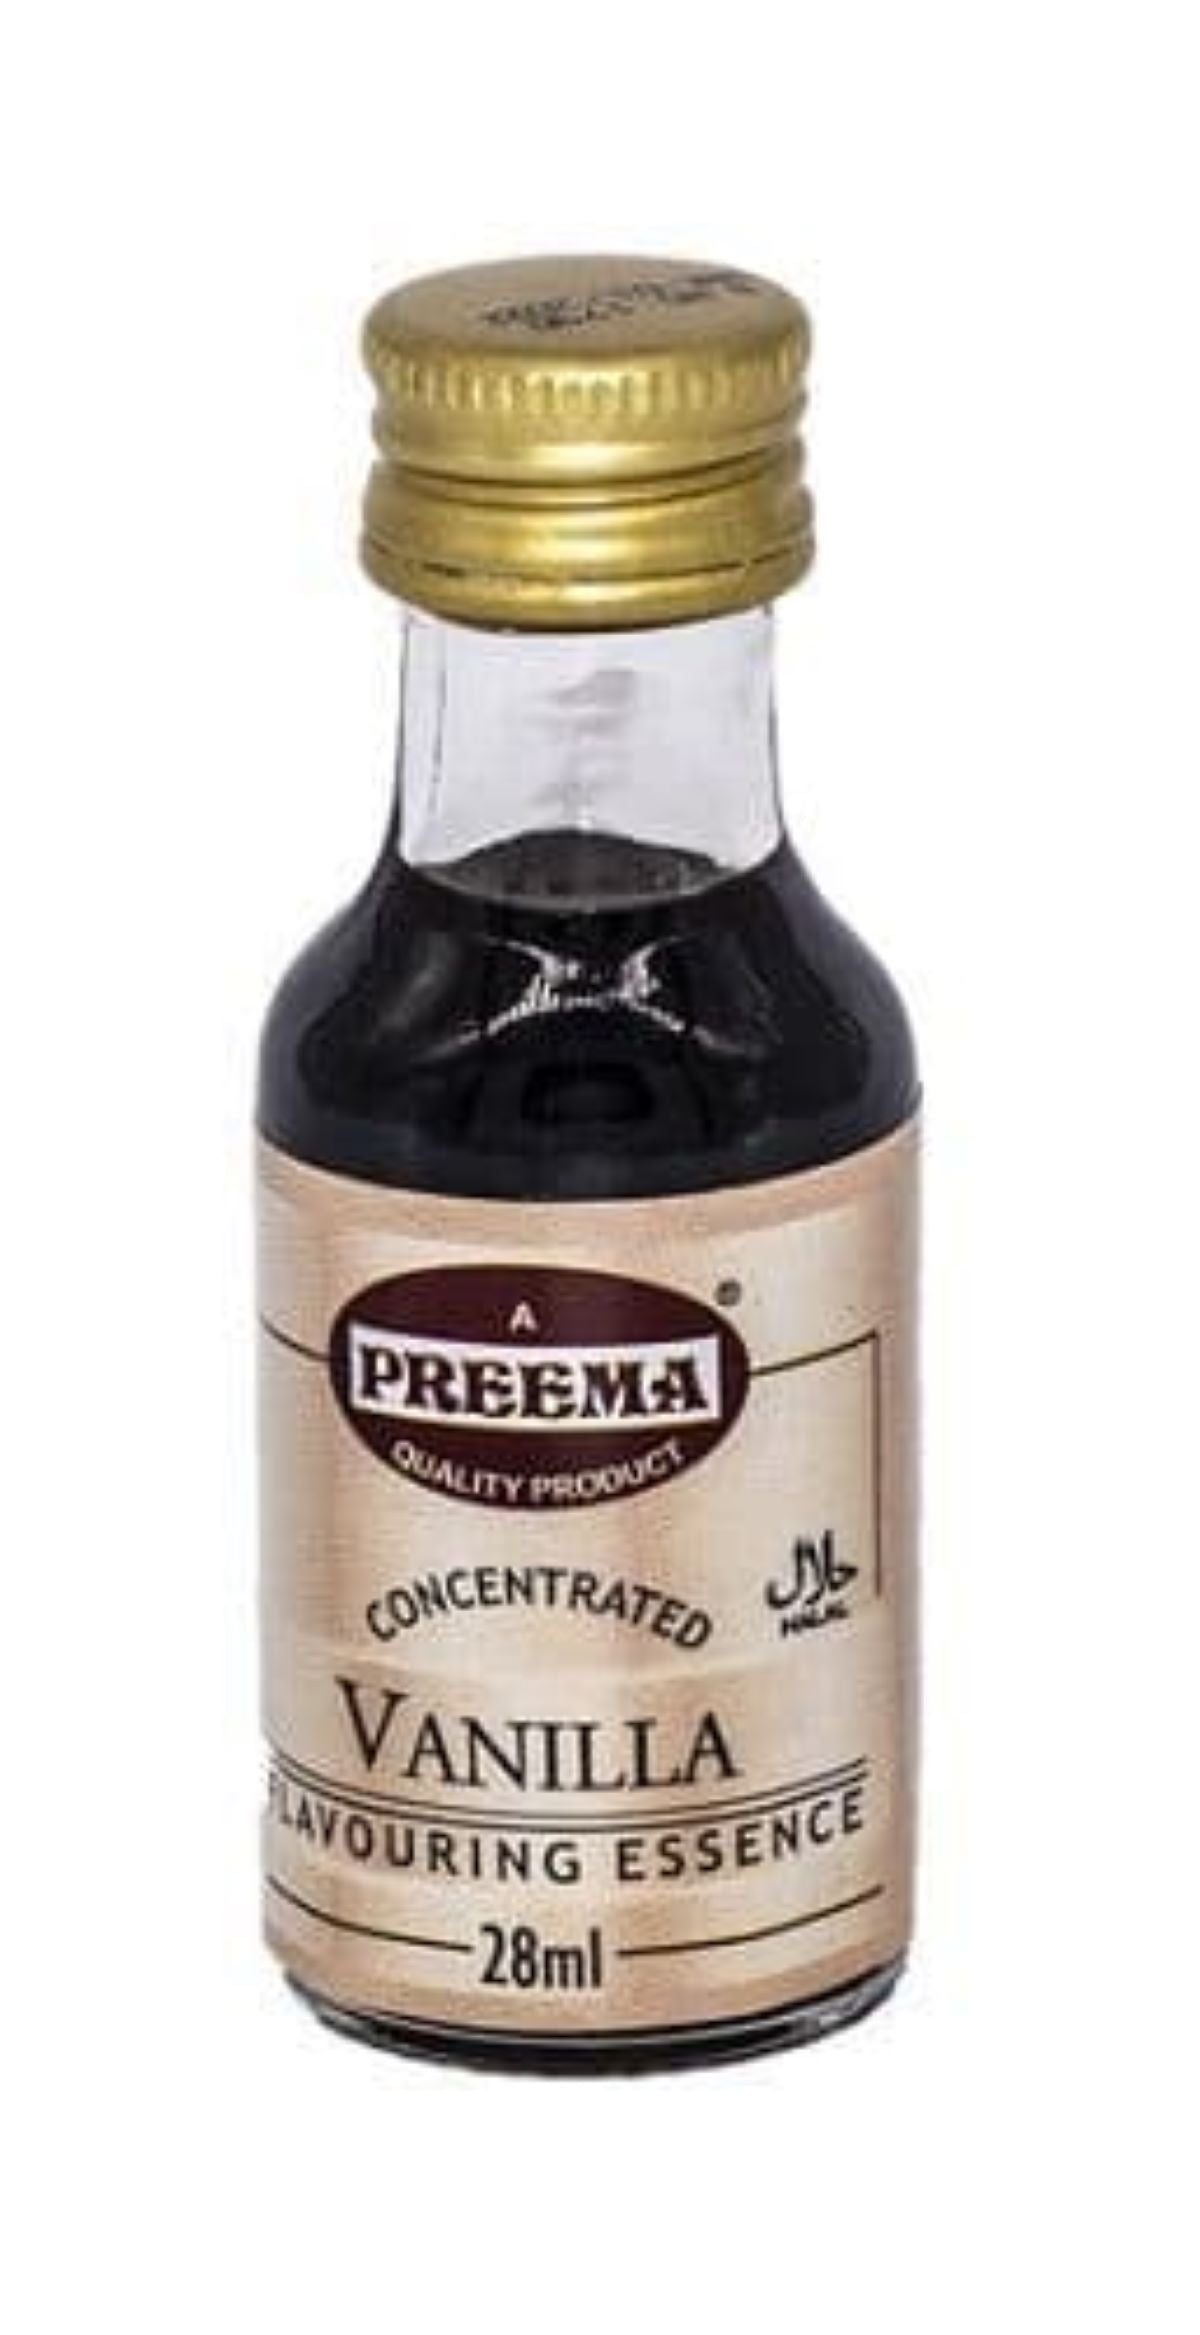 Preema-Vanilla Food Flavouring Essence 28ml